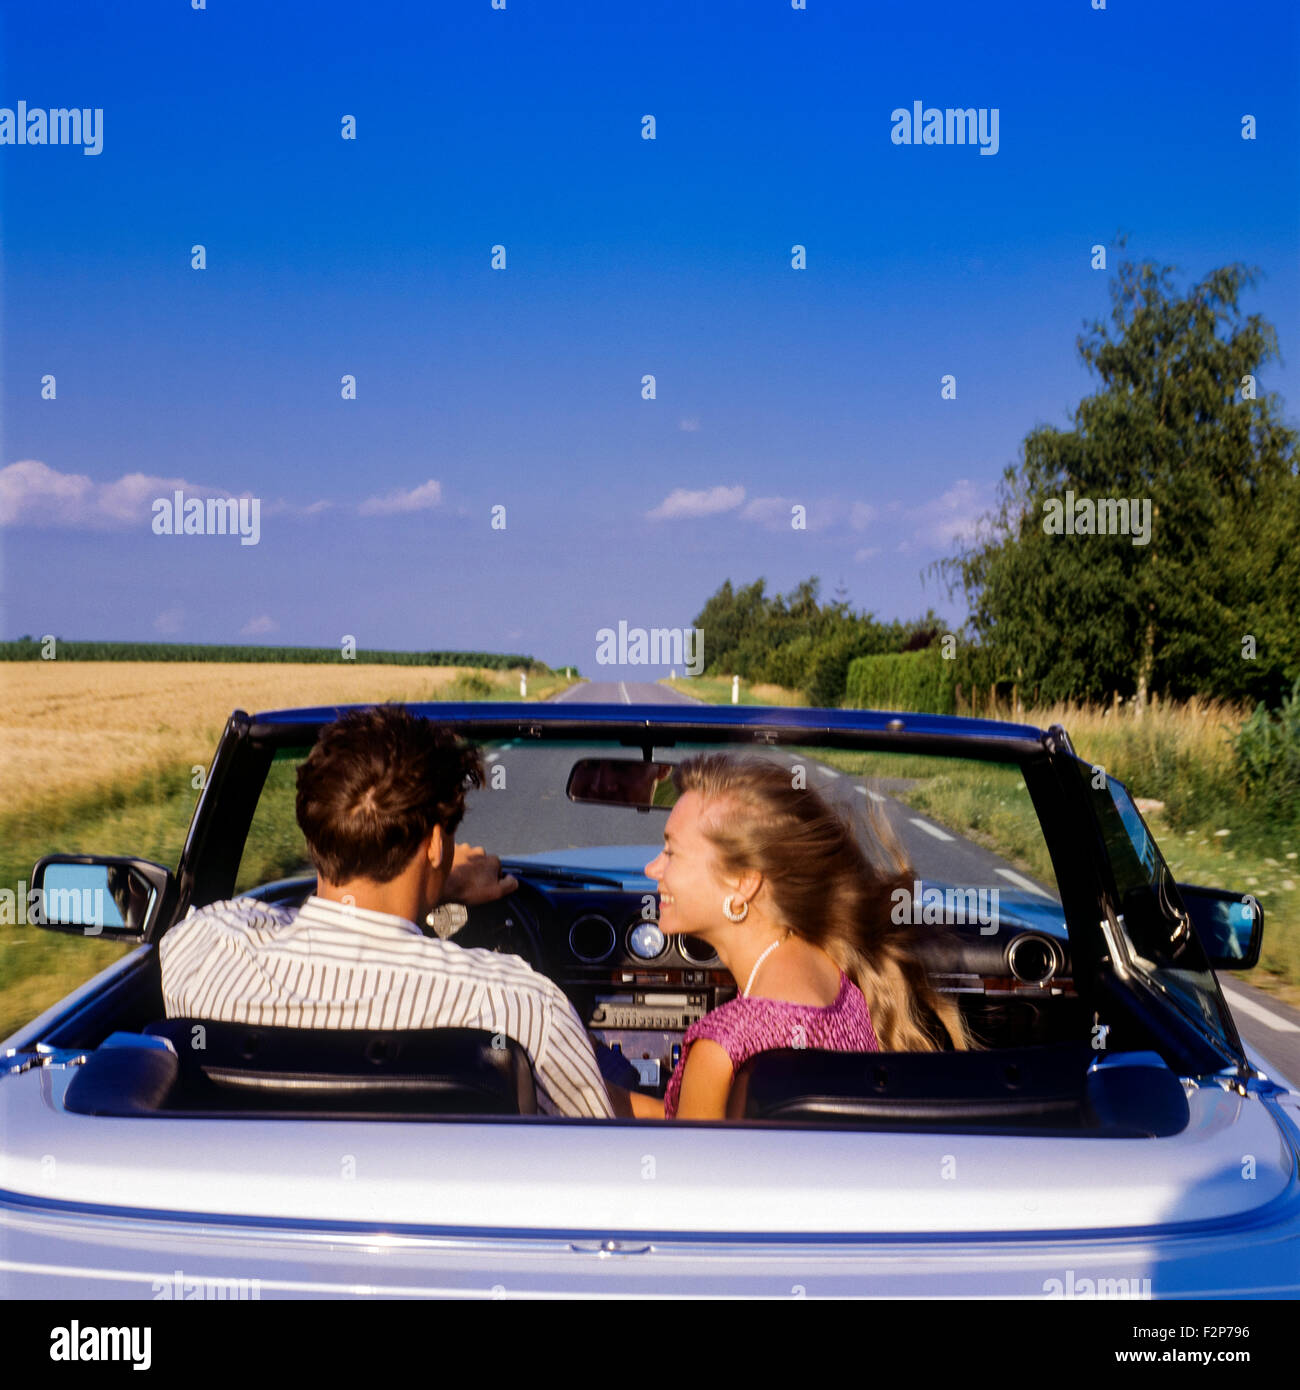 Vue arrière d'un couple au volant d'une Mercedes décapotable voiture sur une route de campagne, Alsace, France Banque D'Images